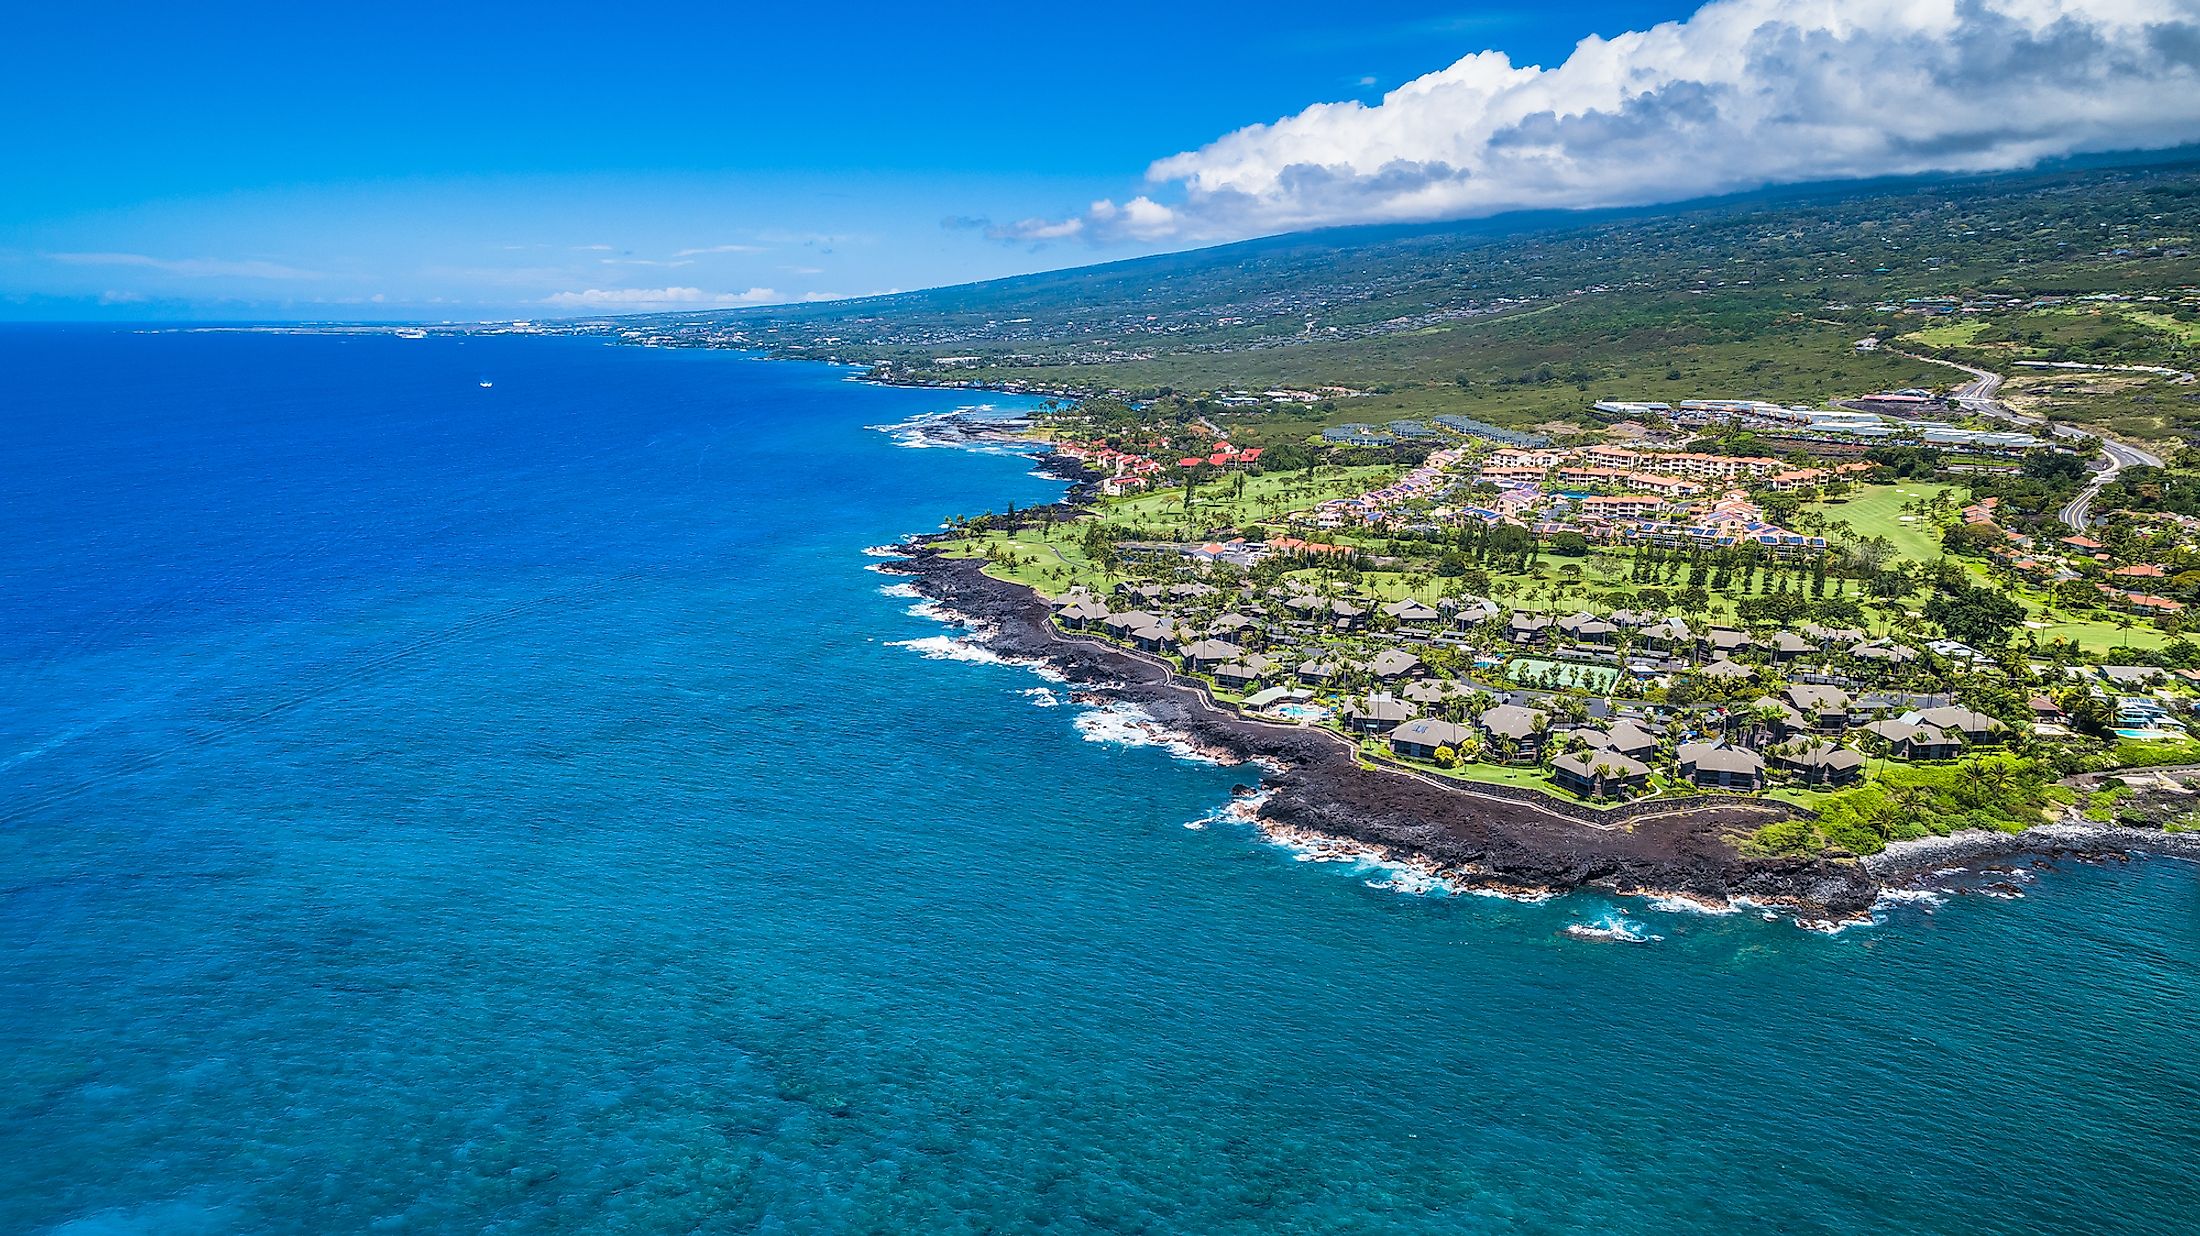 Aerial view of Kailua-Kona, Hawaii.